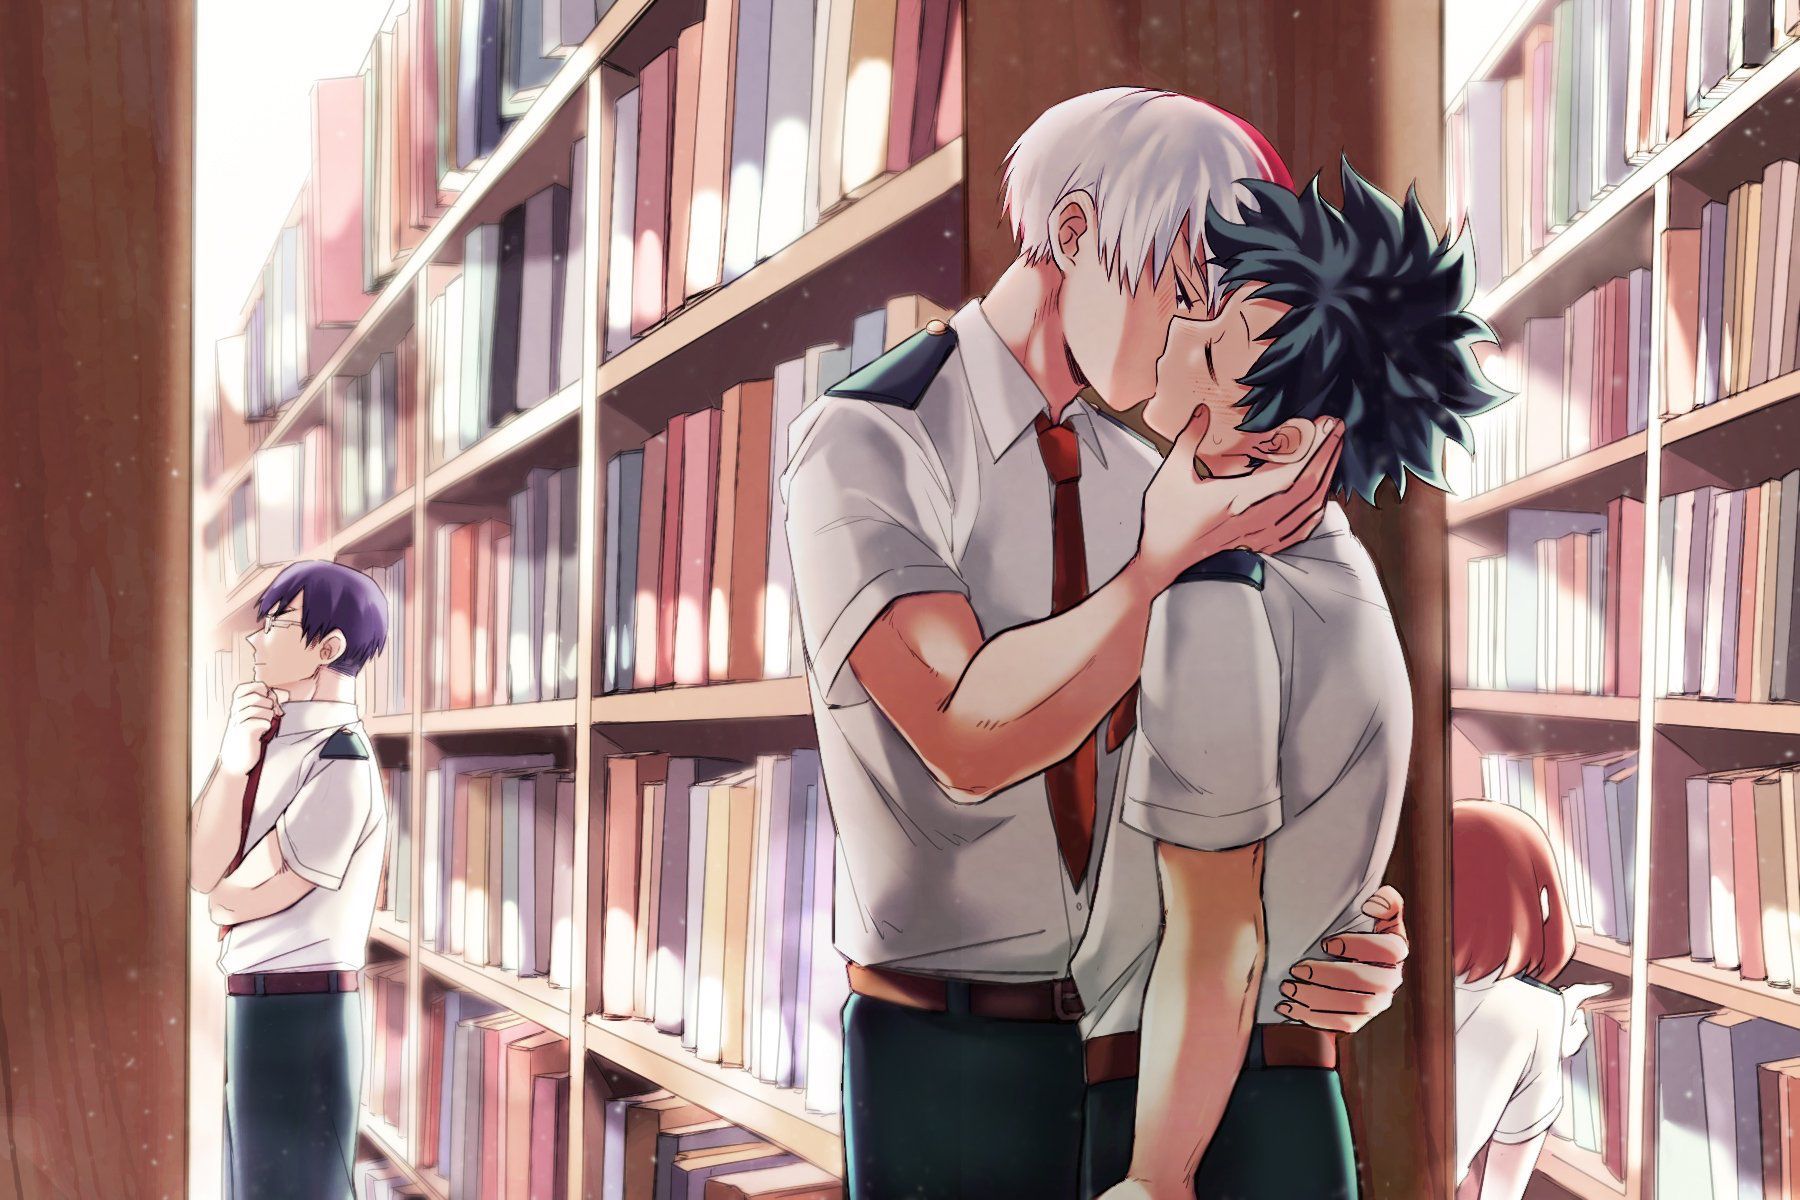 Library kiss part 1. Hero, My hero academia manga, My hero